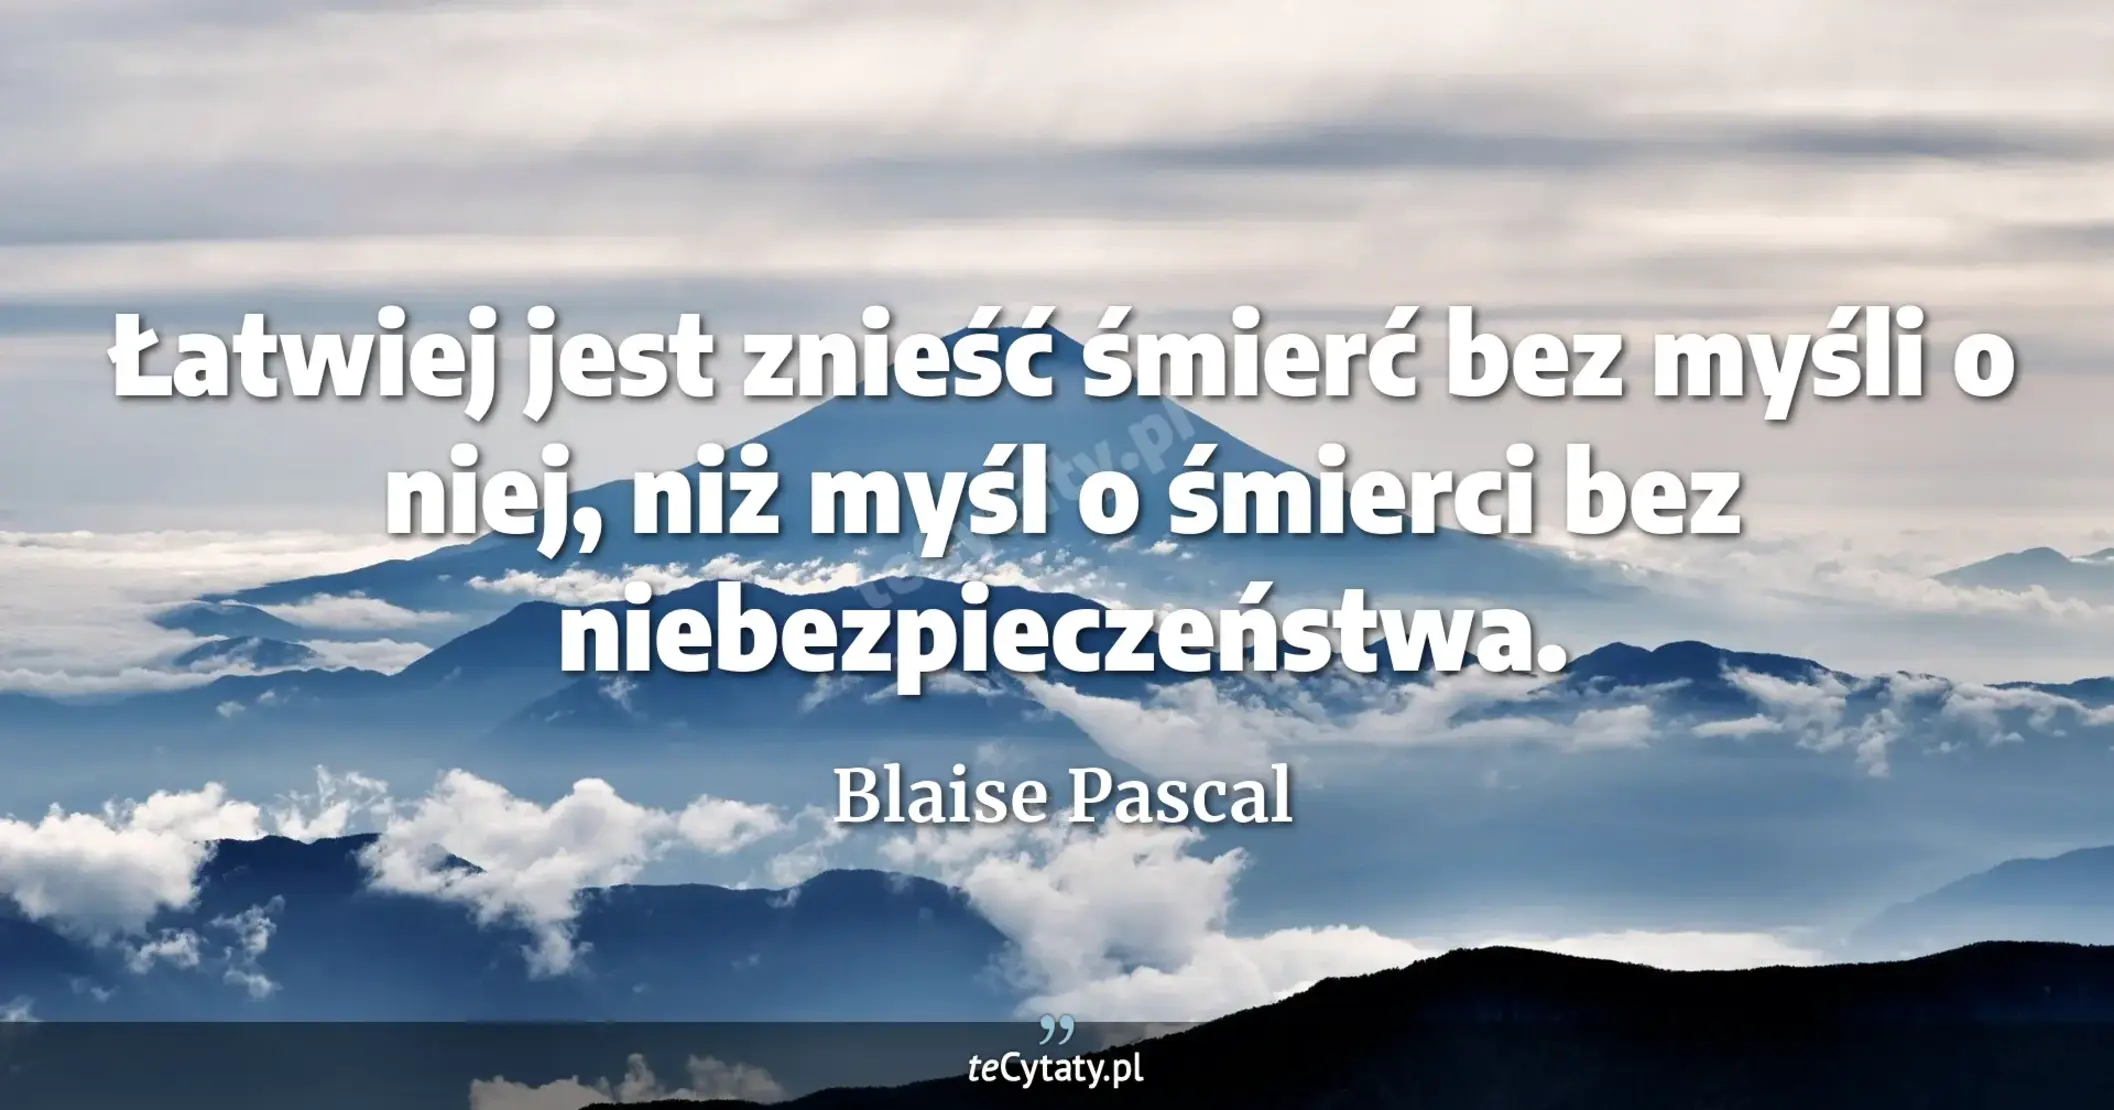 Łatwiej jest znieść śmierć bez myśli o niej, niż myśl o śmierci bez niebezpieczeństwa. - Blaise Pascal